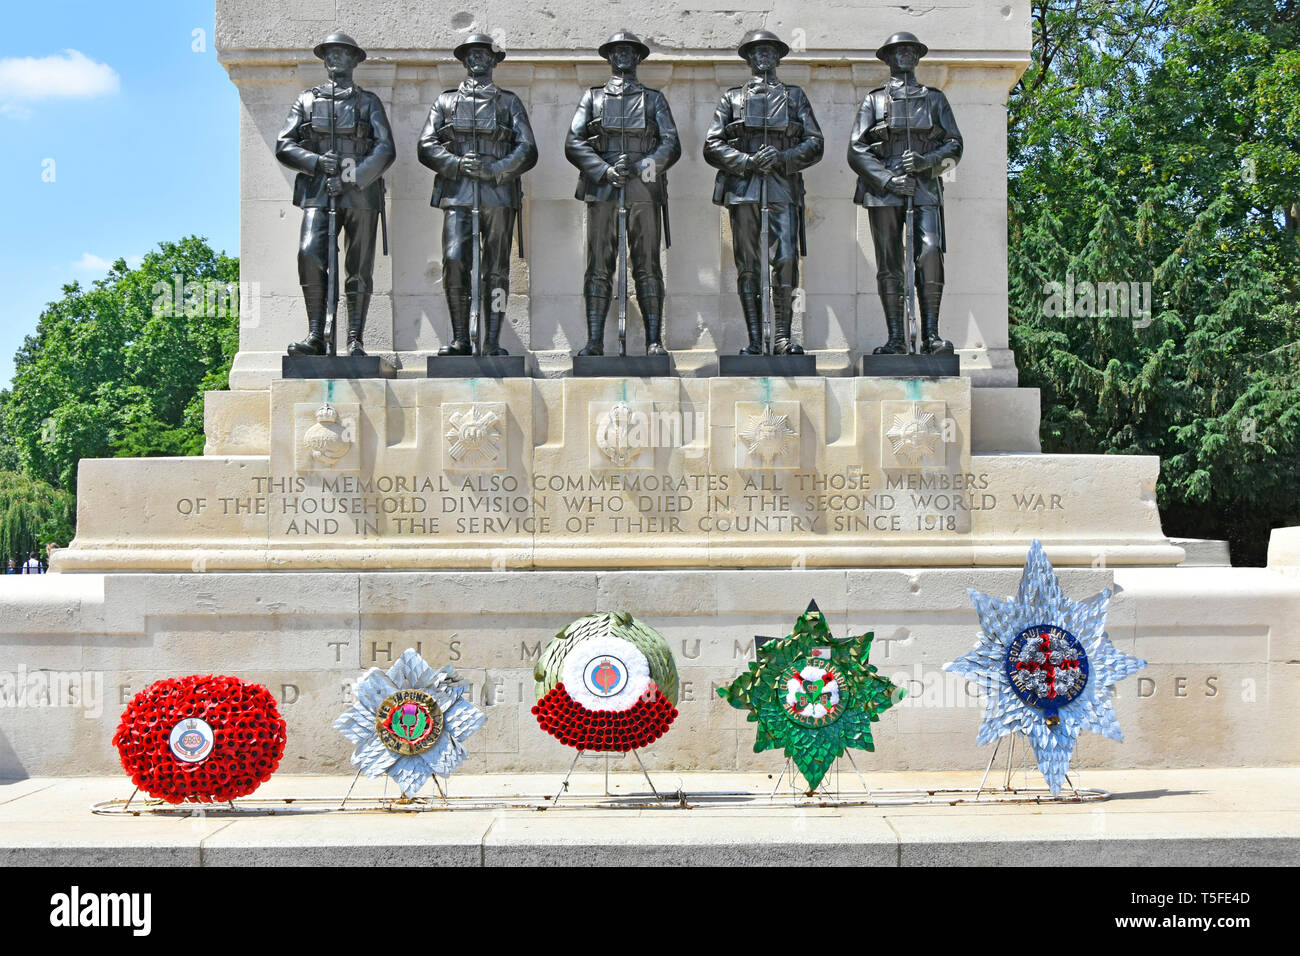 Mémorial de la guerre des gardiens de première et seconde guerre mondiale, avec cinq gerbe & sculpture en bronze de chaque régiment de gardes à pied de la ville de Westminster London England UK Banque D'Images